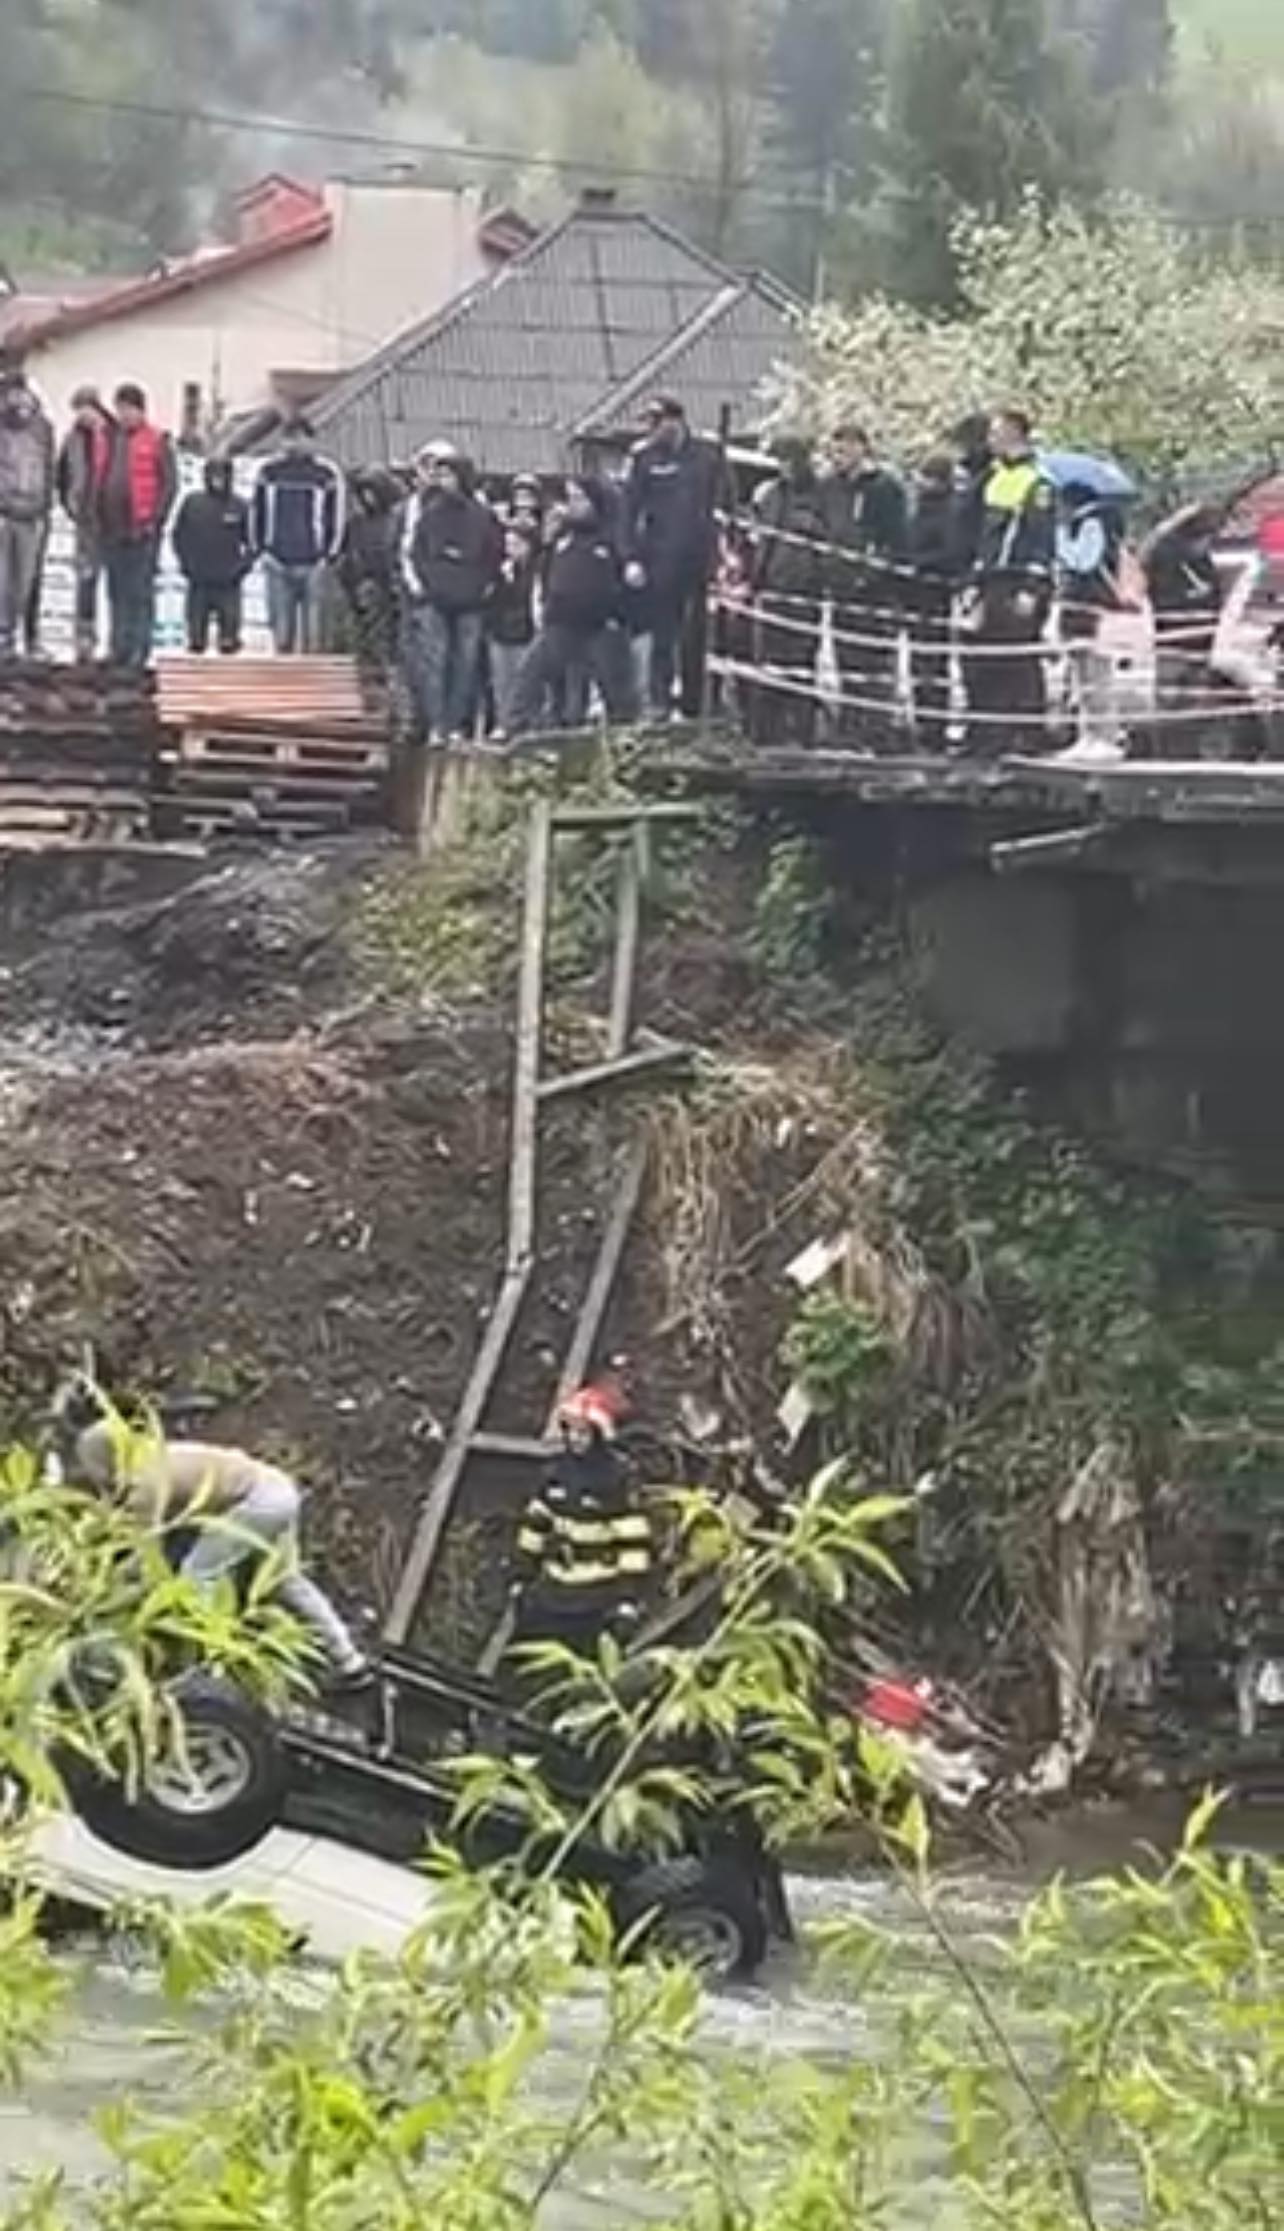 EXCLUSIV VIDEO: O șoferiță a trecut prin balustrada unui pod și a plonjat în râu cu mașina